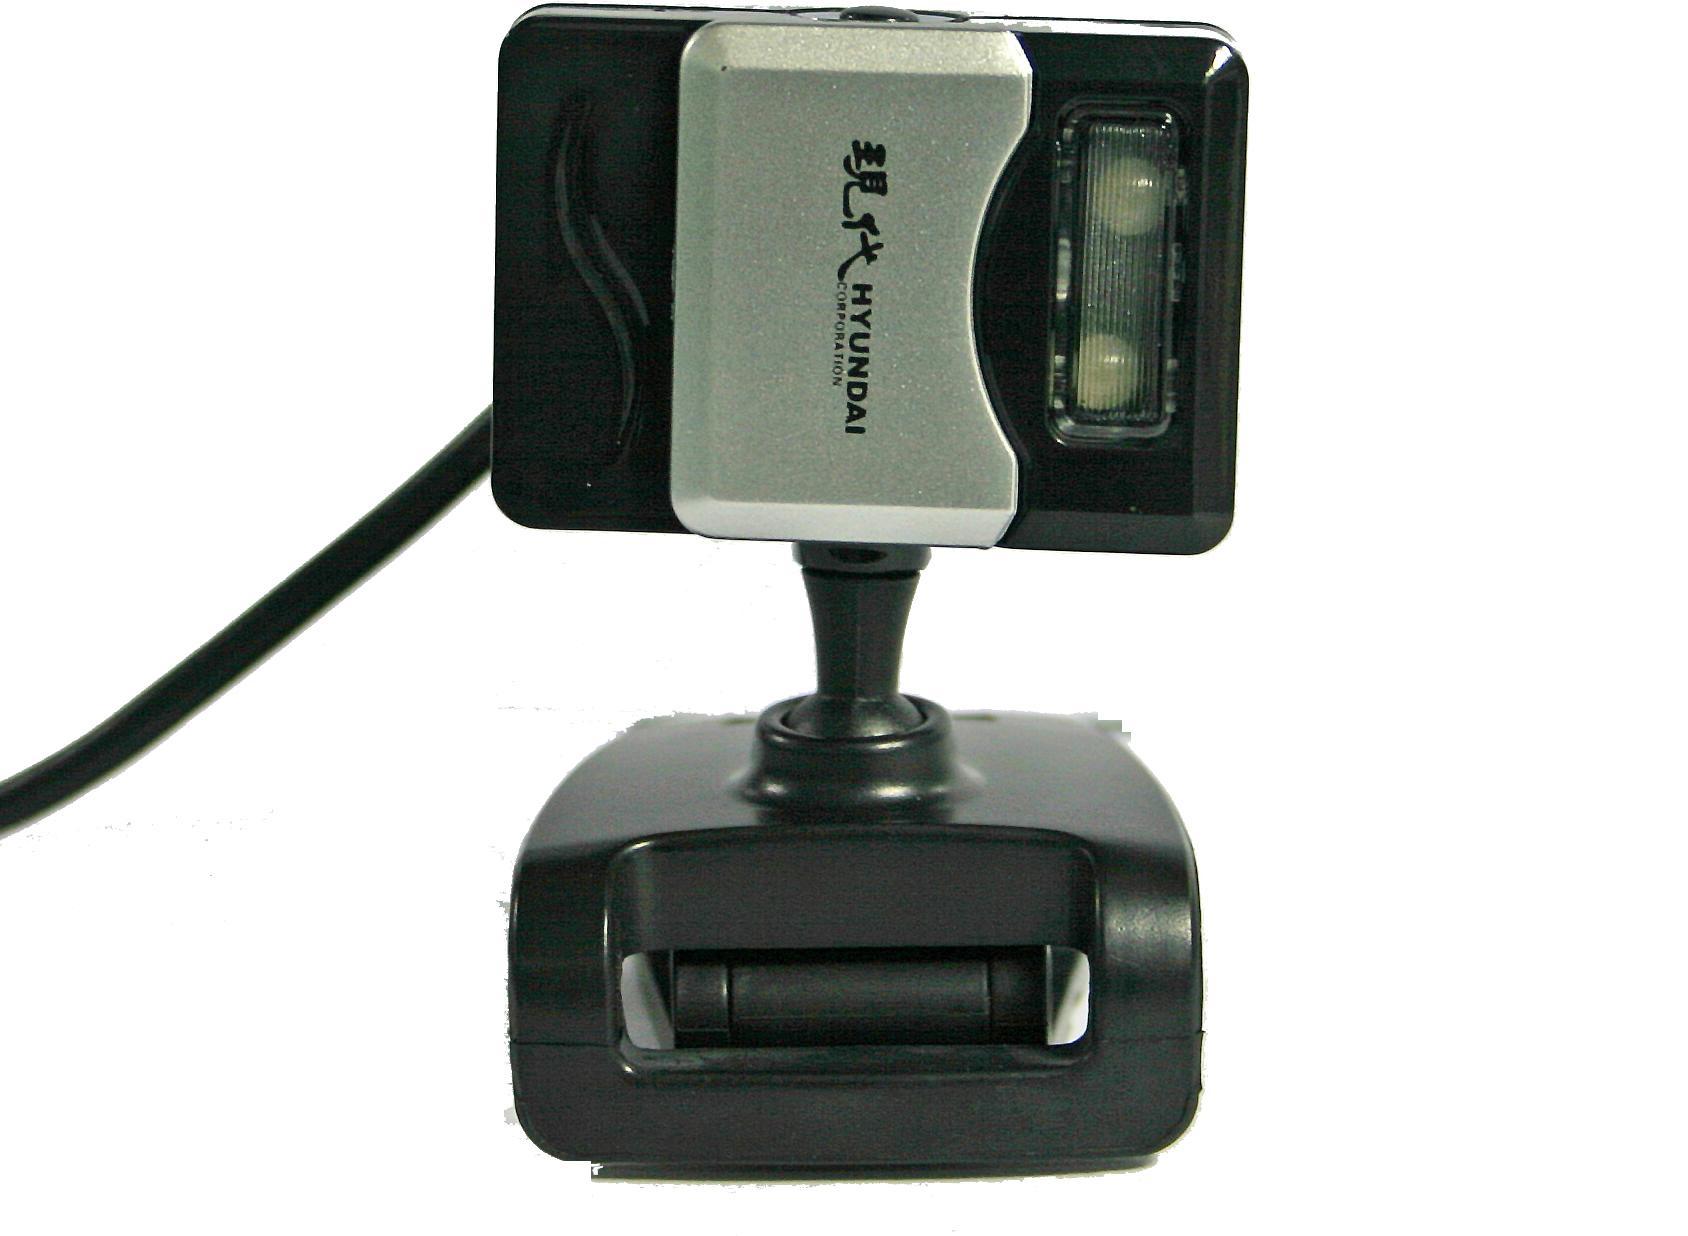 USB Κάμερα στα 1.3MP HY-A4 Hyundai No Need Driver